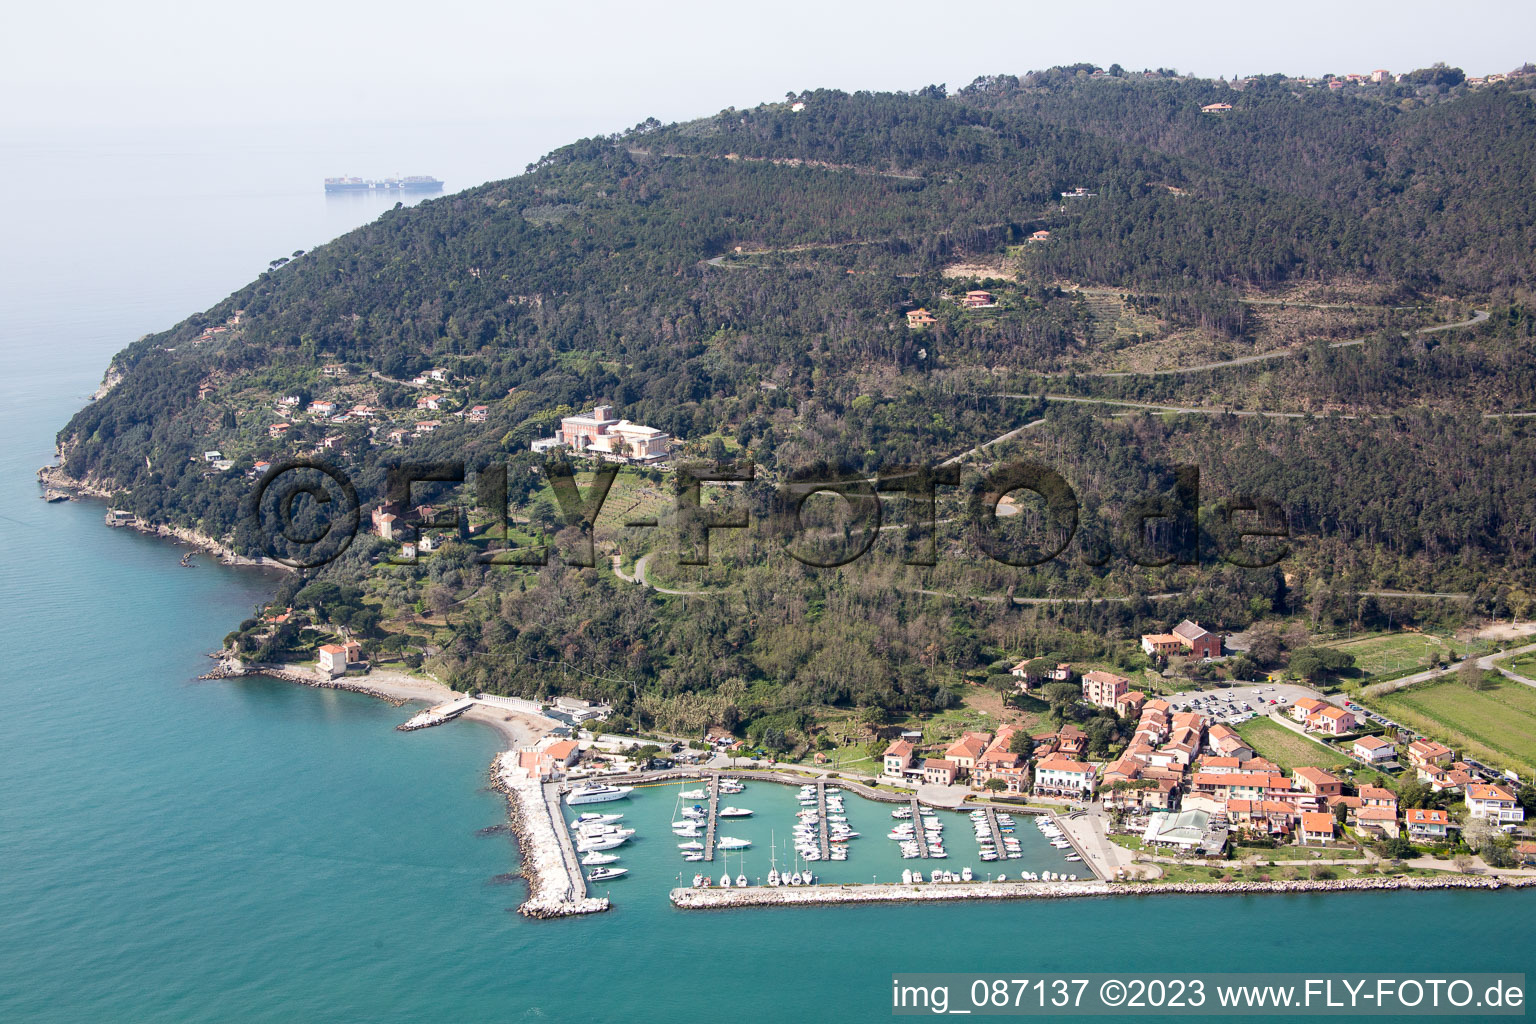 Aerial view of Fiumaretta di Ameglia in the state Liguria, Italy